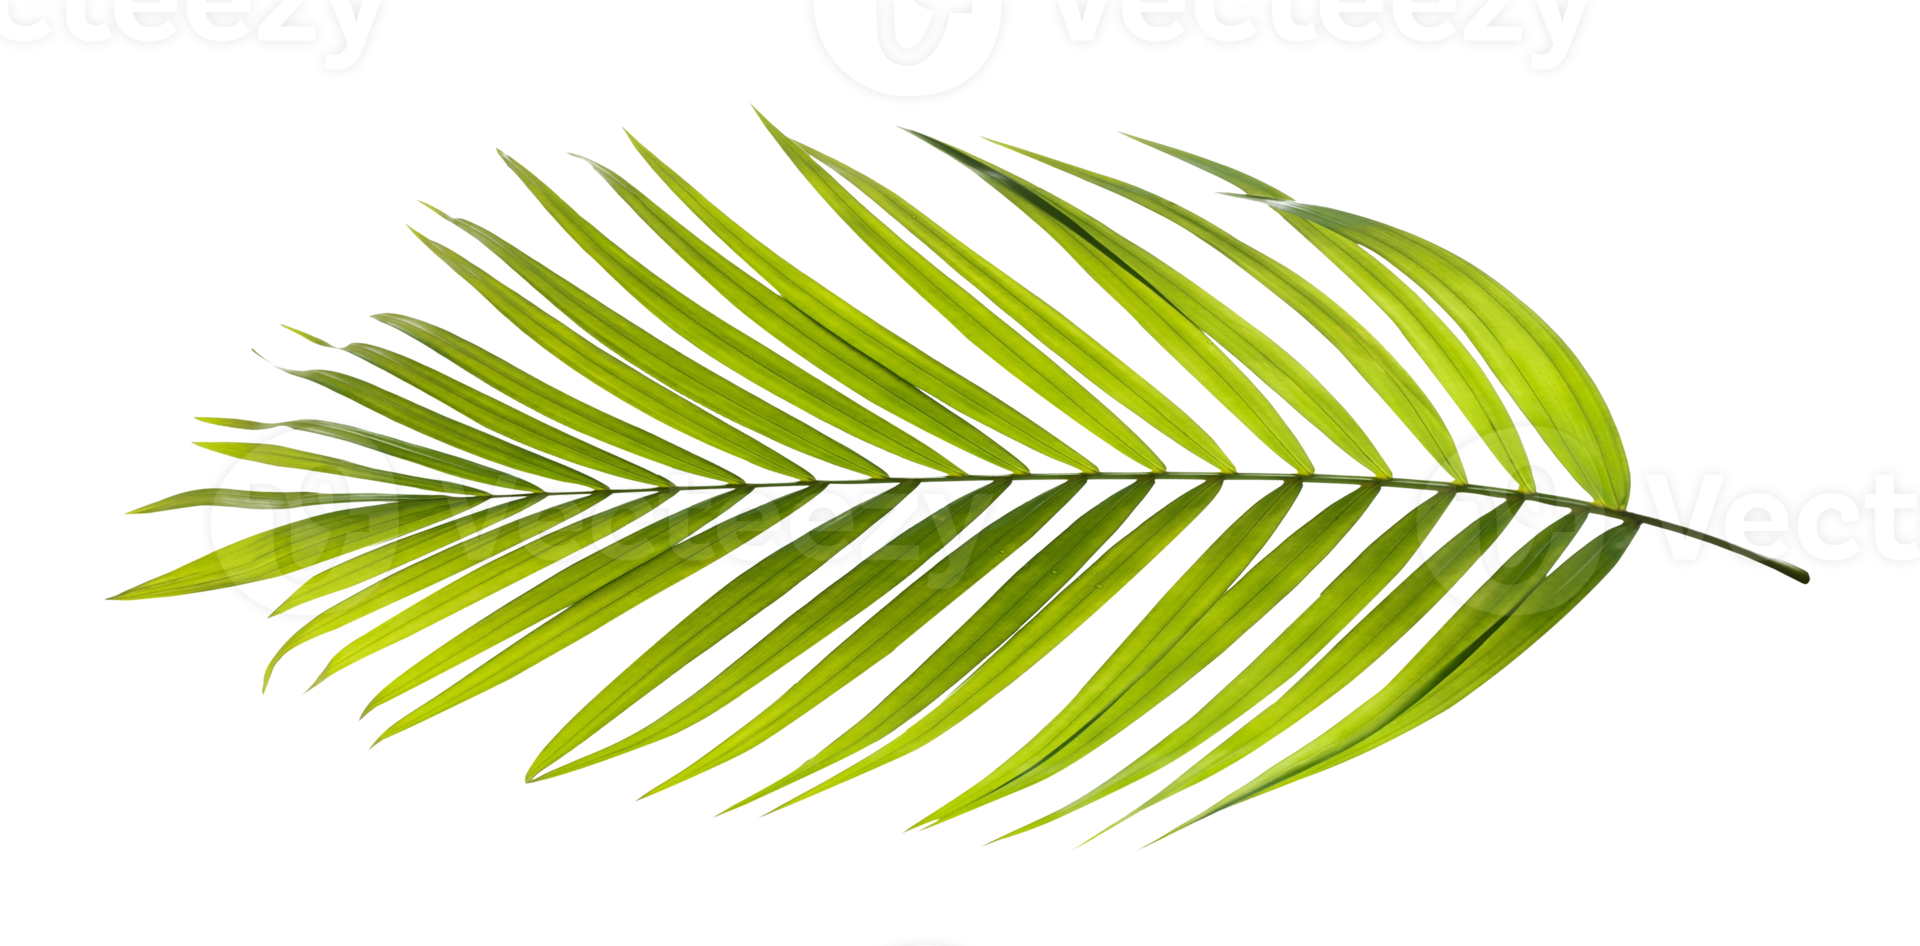 grönt blad av palmträd på transparent bakgrund png-fil png